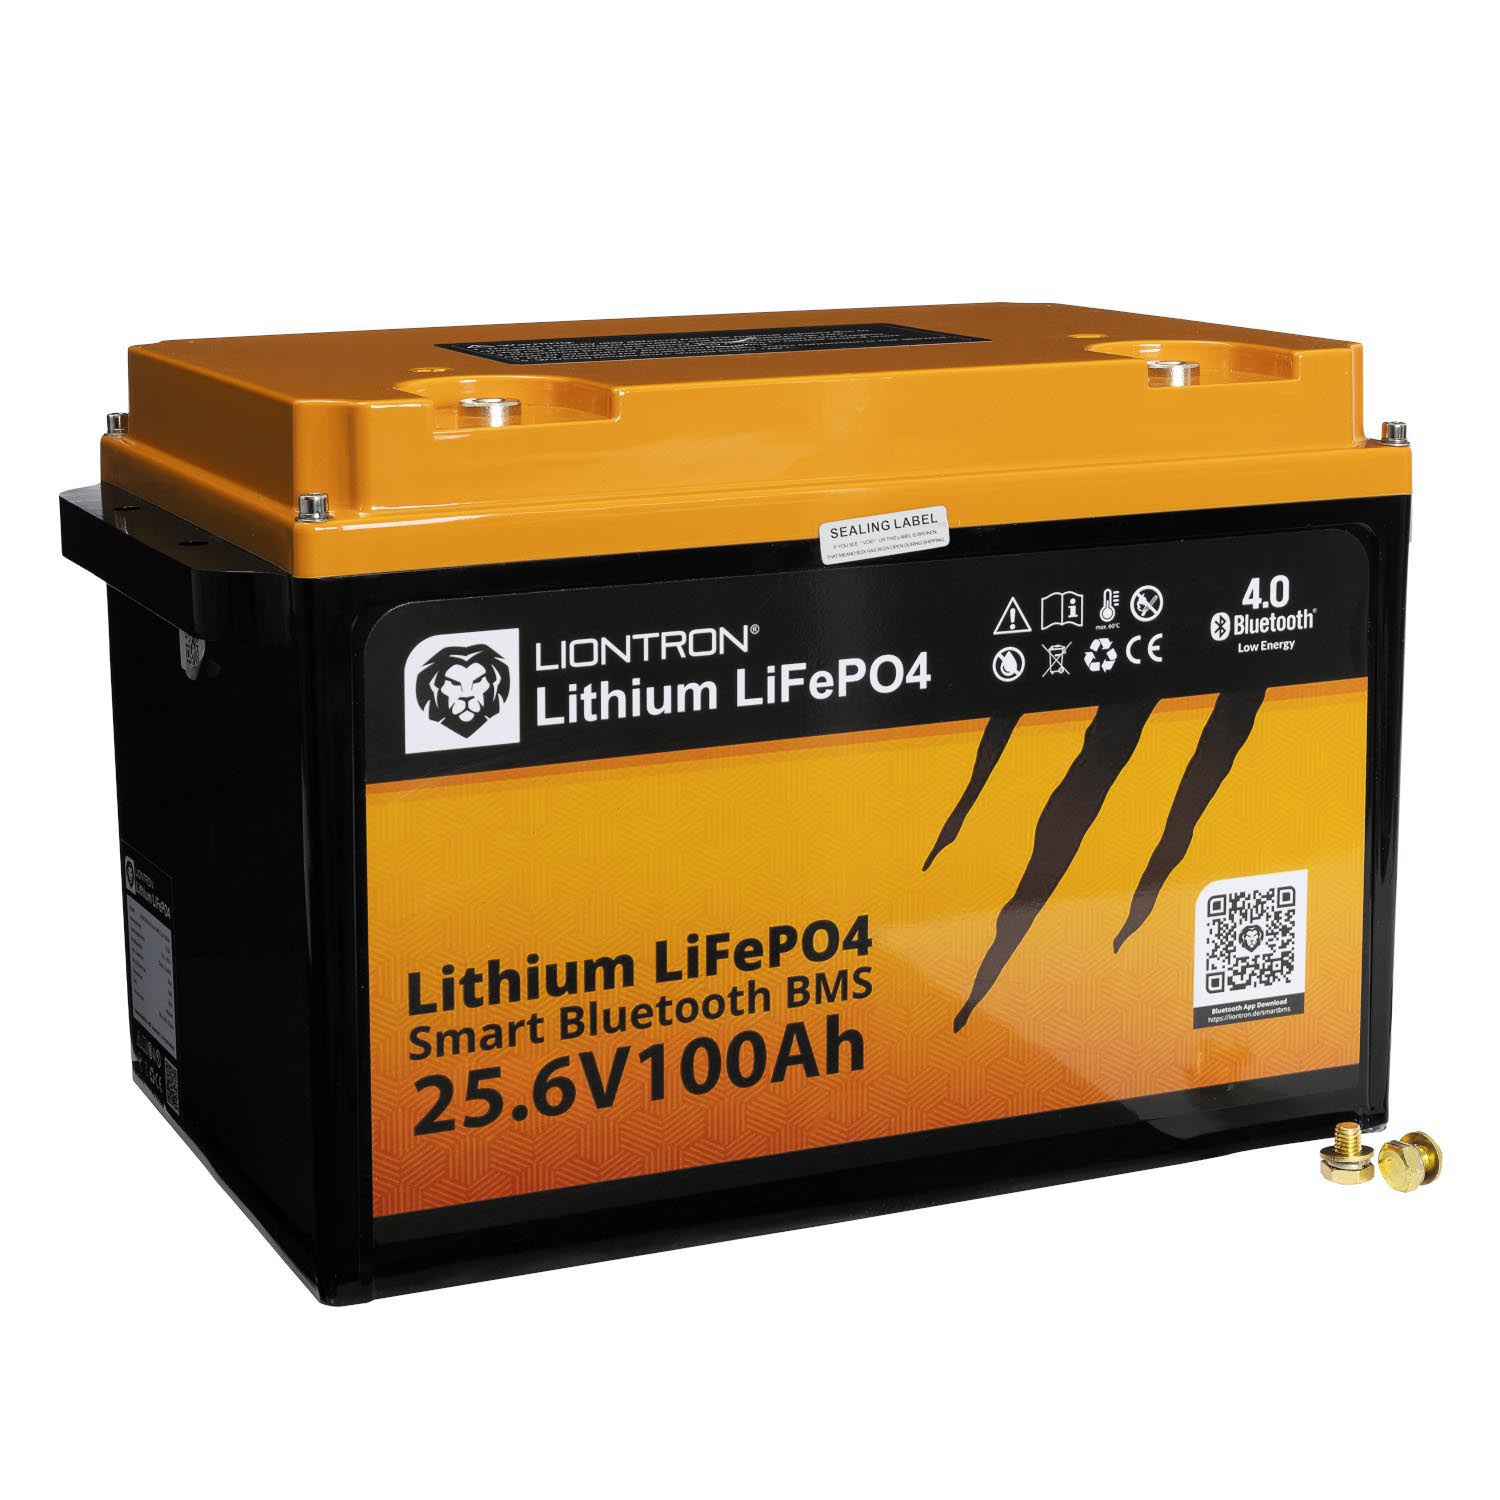 Liontron 100Ah 25,6V LiFePO4 Lithium Batterie BMS Bluetooth mit App